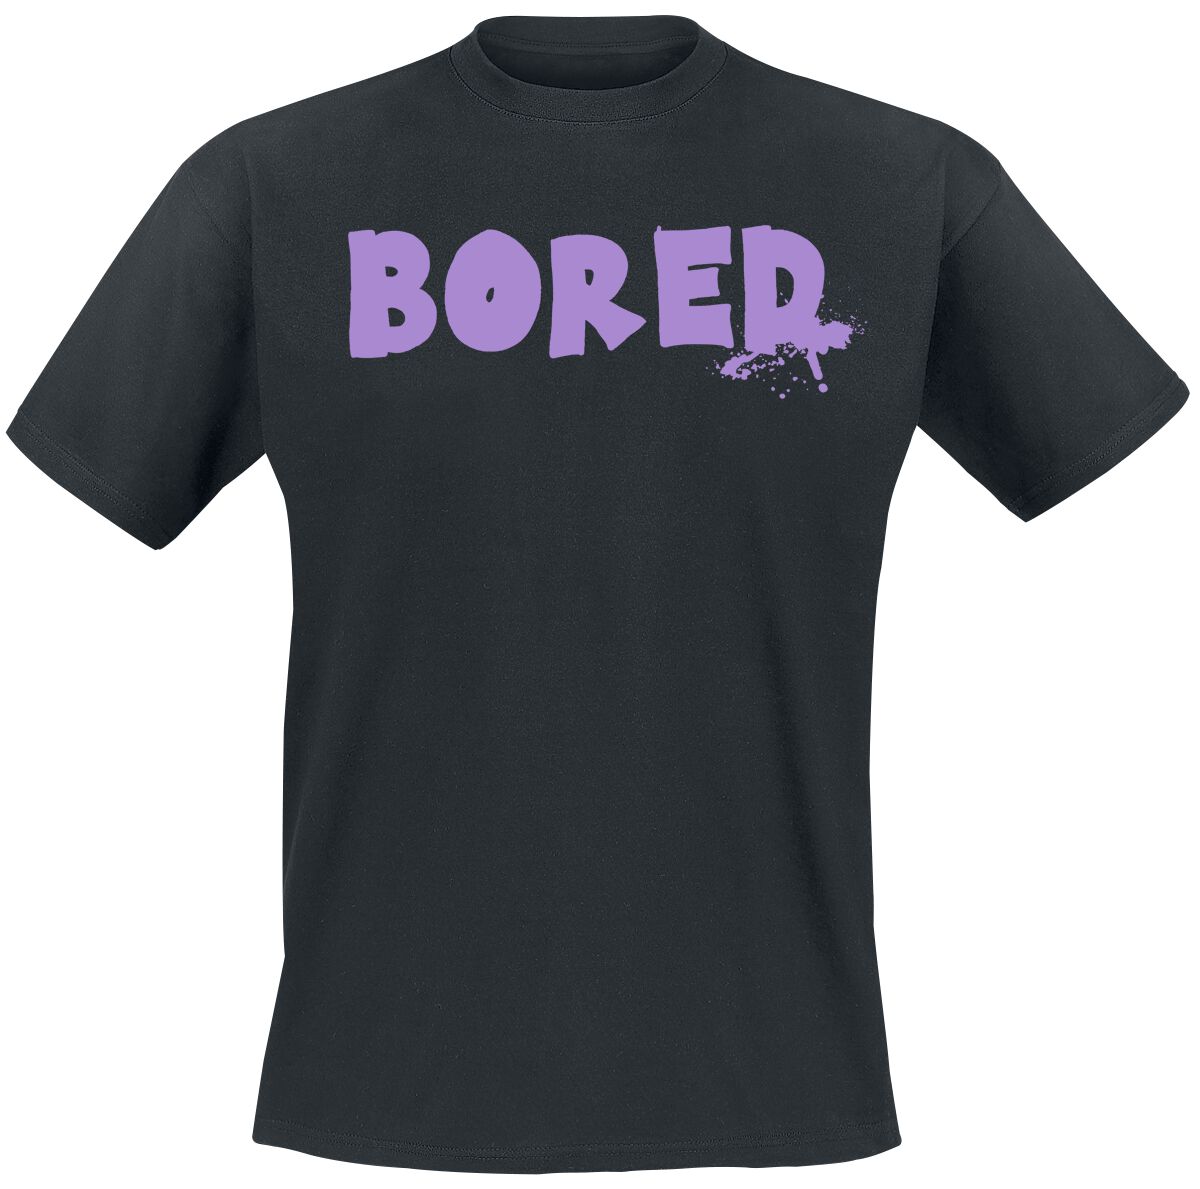 Bored Of Directors T-Shirt - Bored Capeton - S bis XXL - für Männer - Größe XXL - schwarz  - EMP exklusives Merchandise!